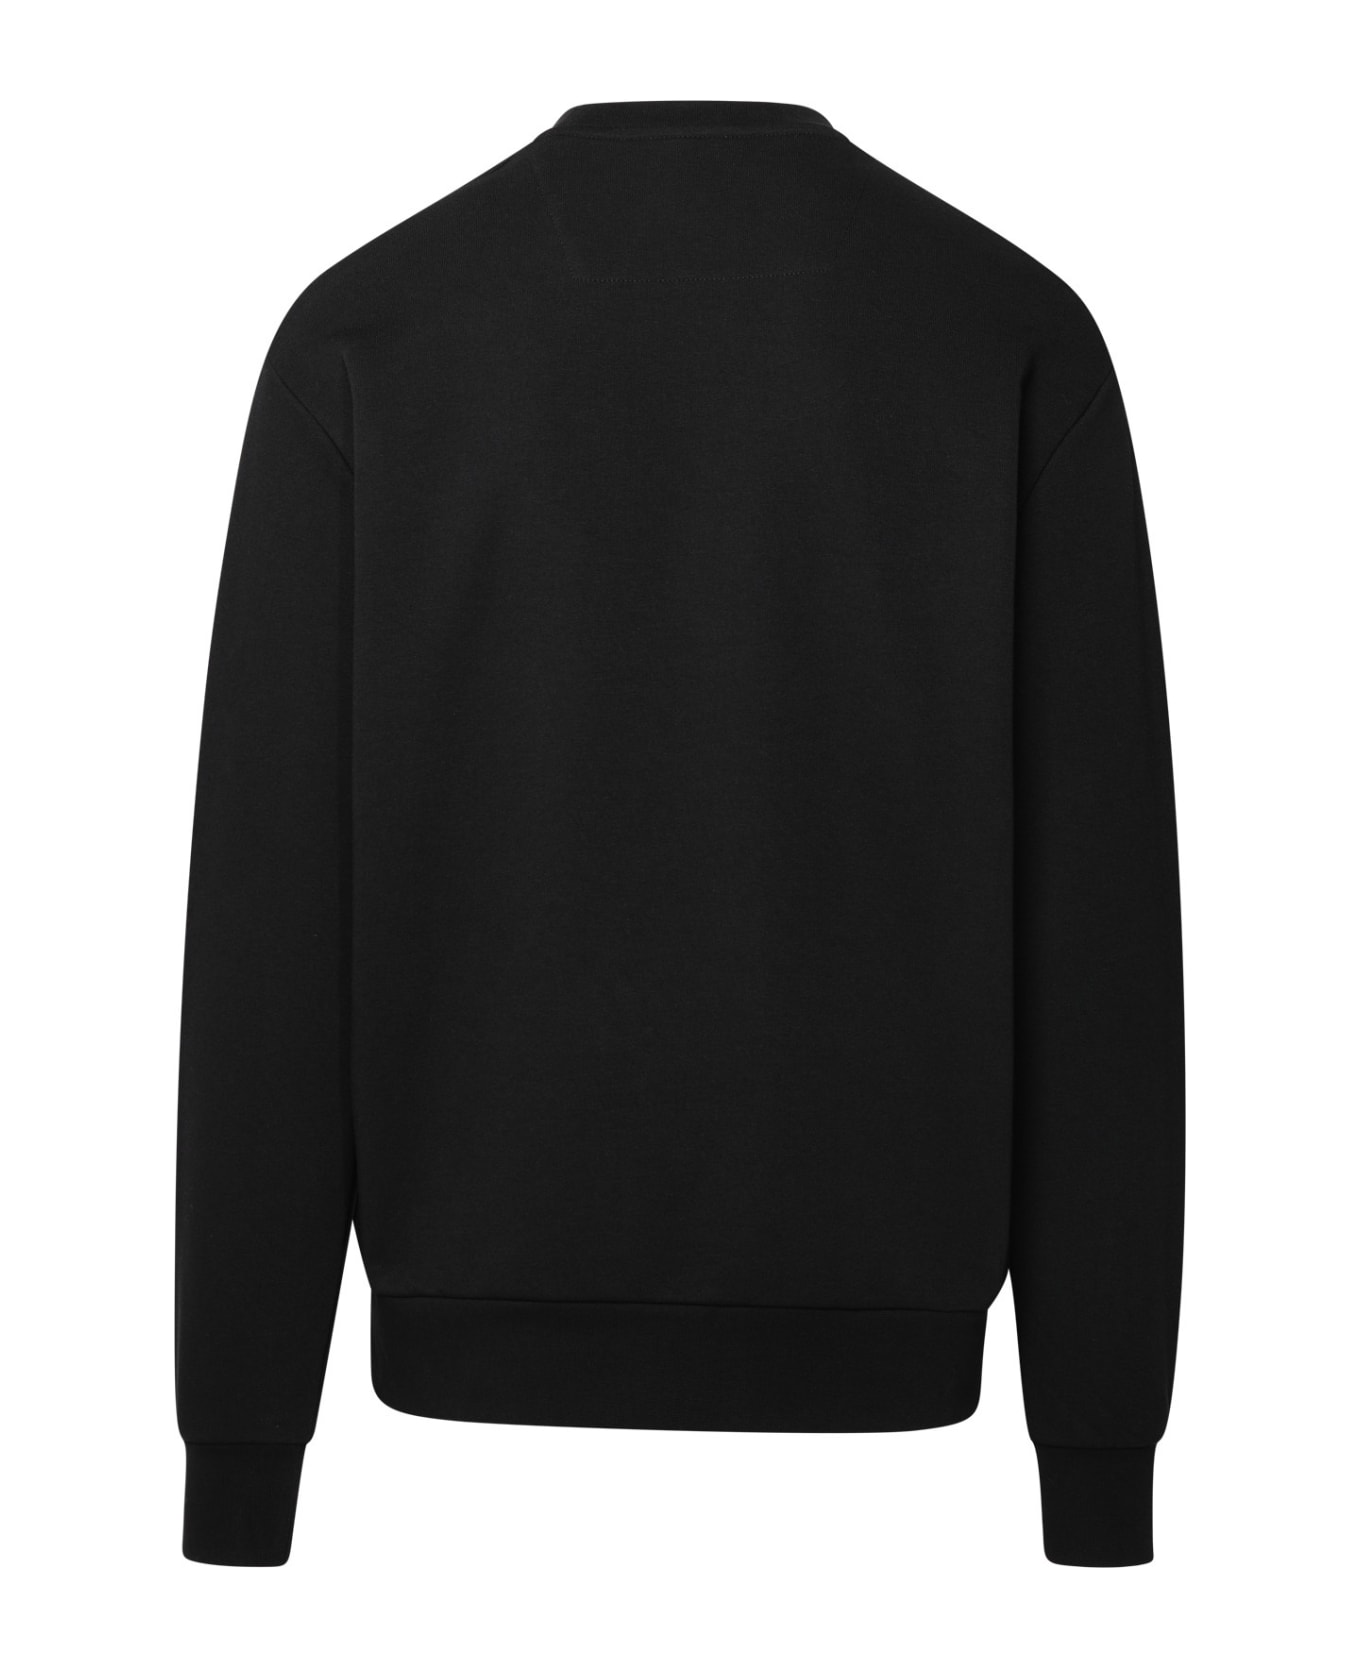 Philipp Plein Black Cotton Blend Sweatshirt - Nero